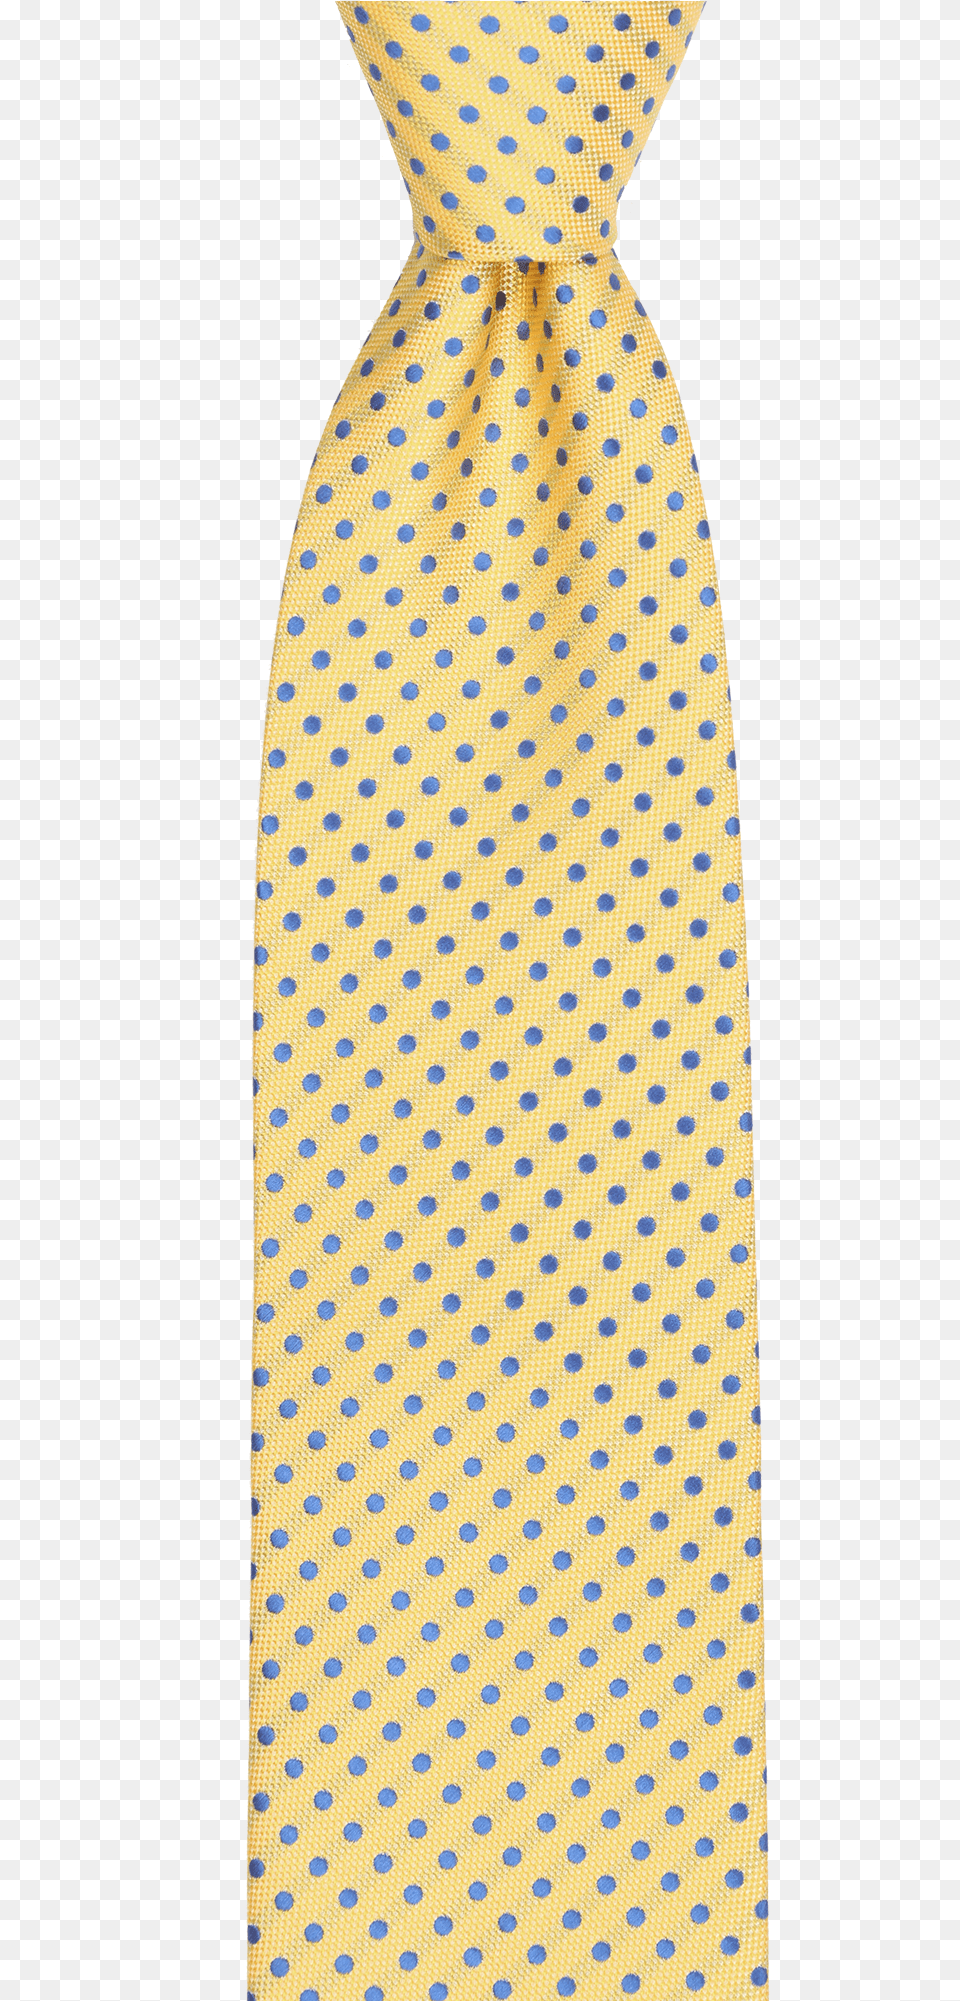 Ceo Made In Italy Tie In Yellow Dot Faldas De Bolas, Accessories, Formal Wear, Necktie Free Png Download